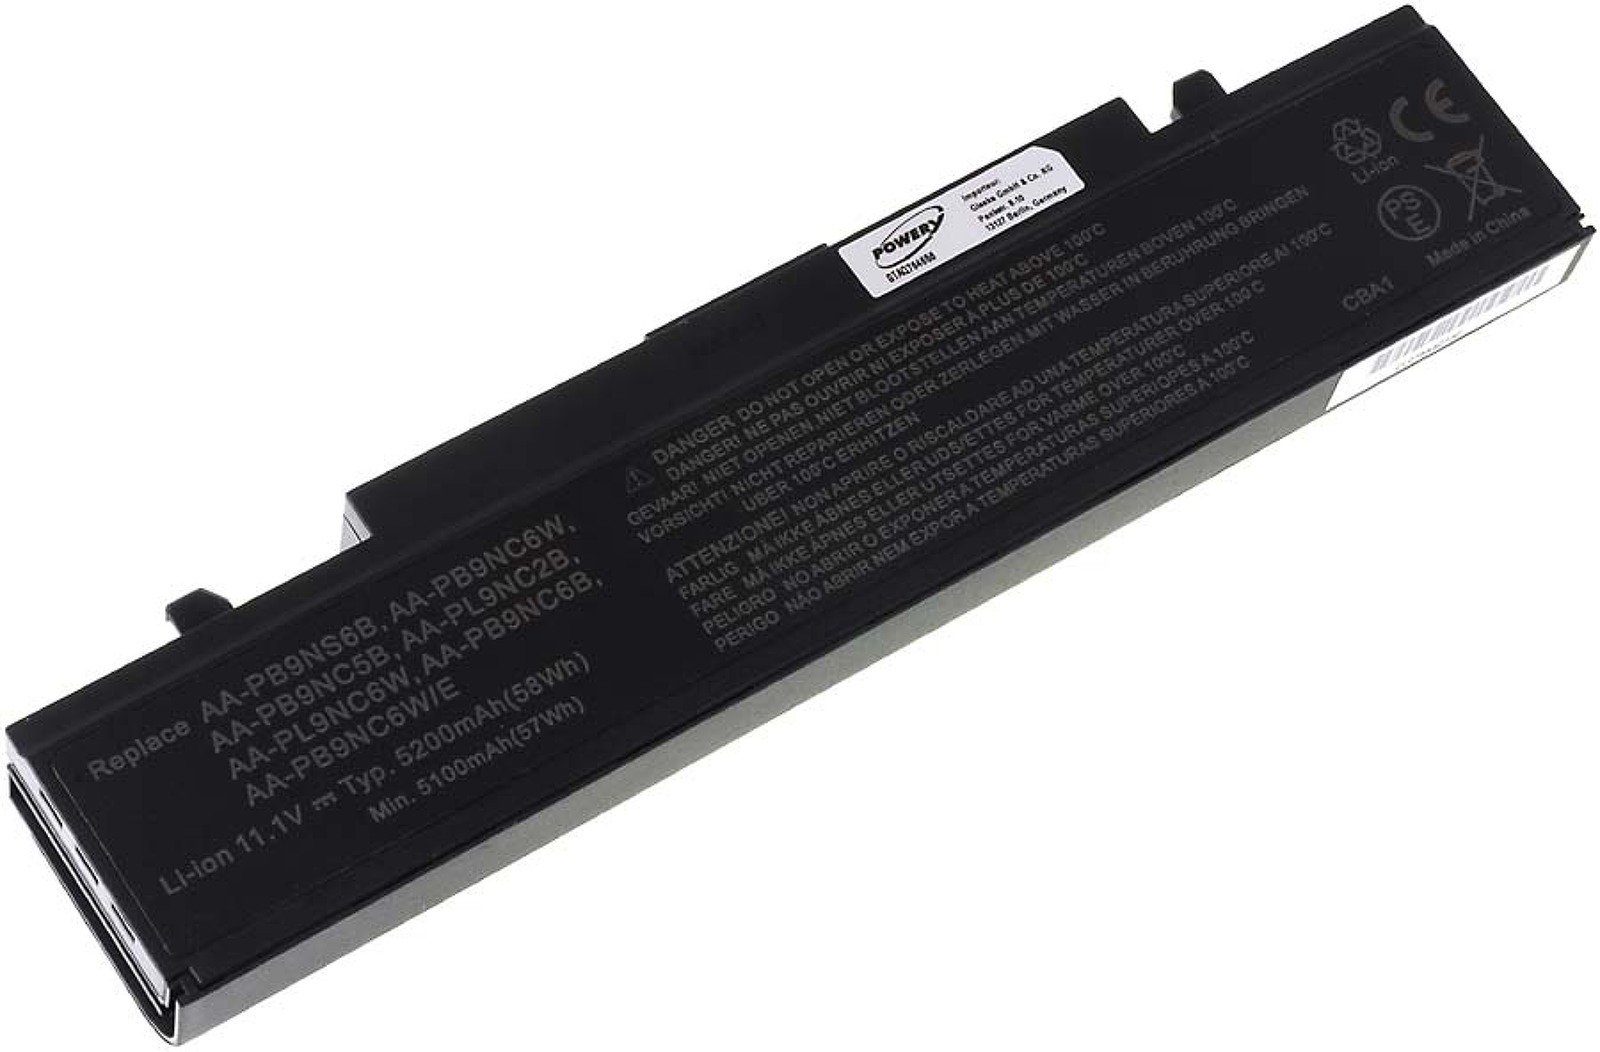 (11.1 R580 Powery Akku für 5200 mAh Samsung Laptop-Akku V)